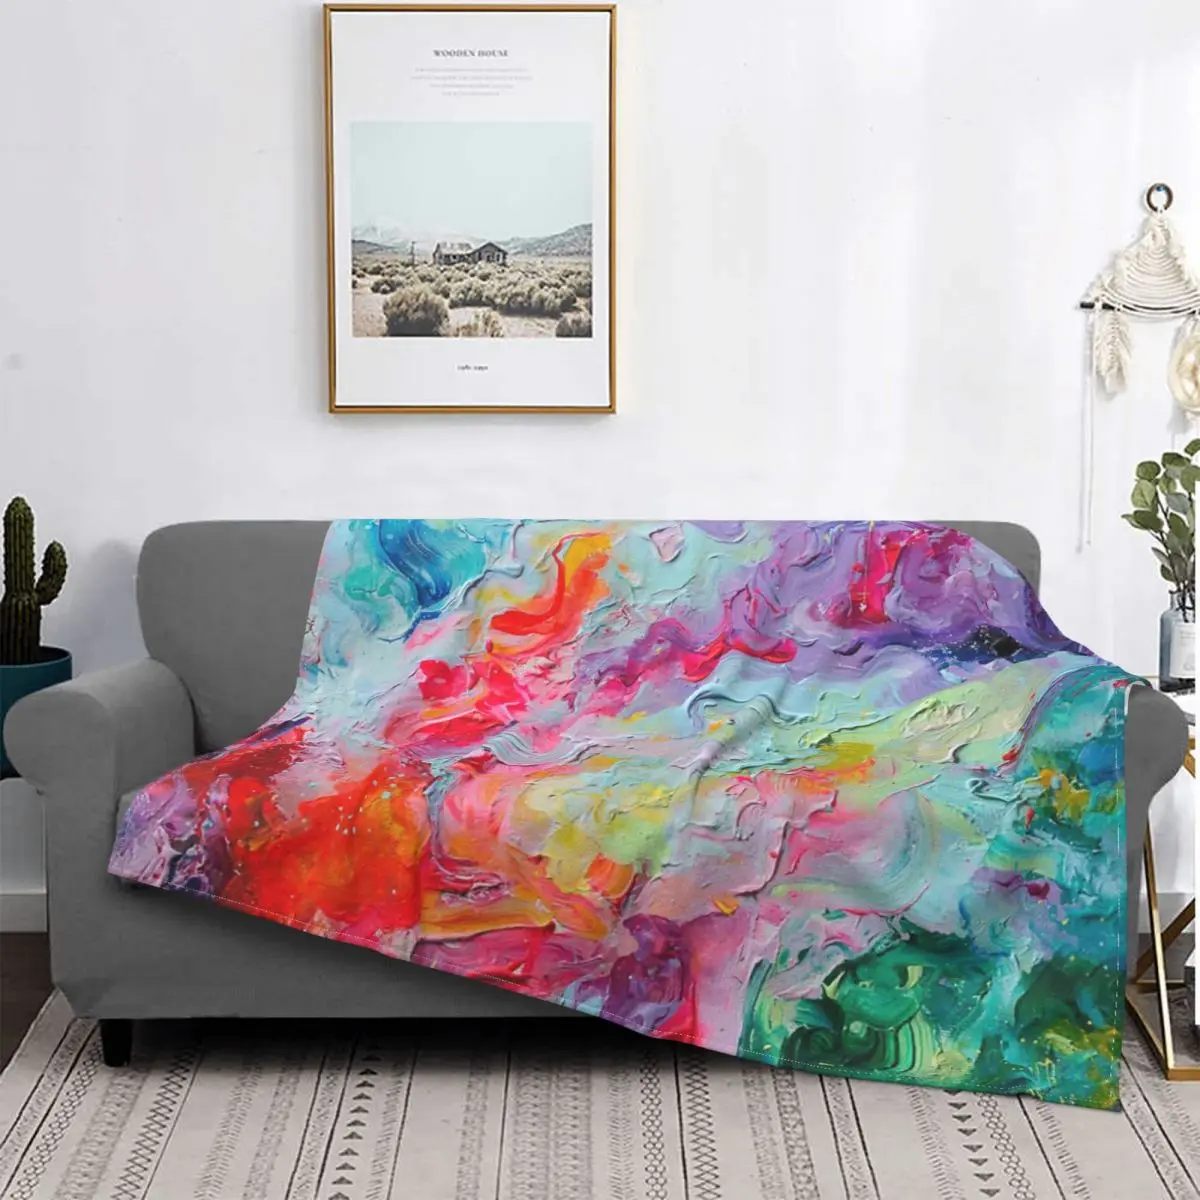 

Одеяло-абстракция элементов спектра, покрывало для кровати, плед, диван, пляжное полотенце, тепловое одеяло, домашний текстиль, роскошное